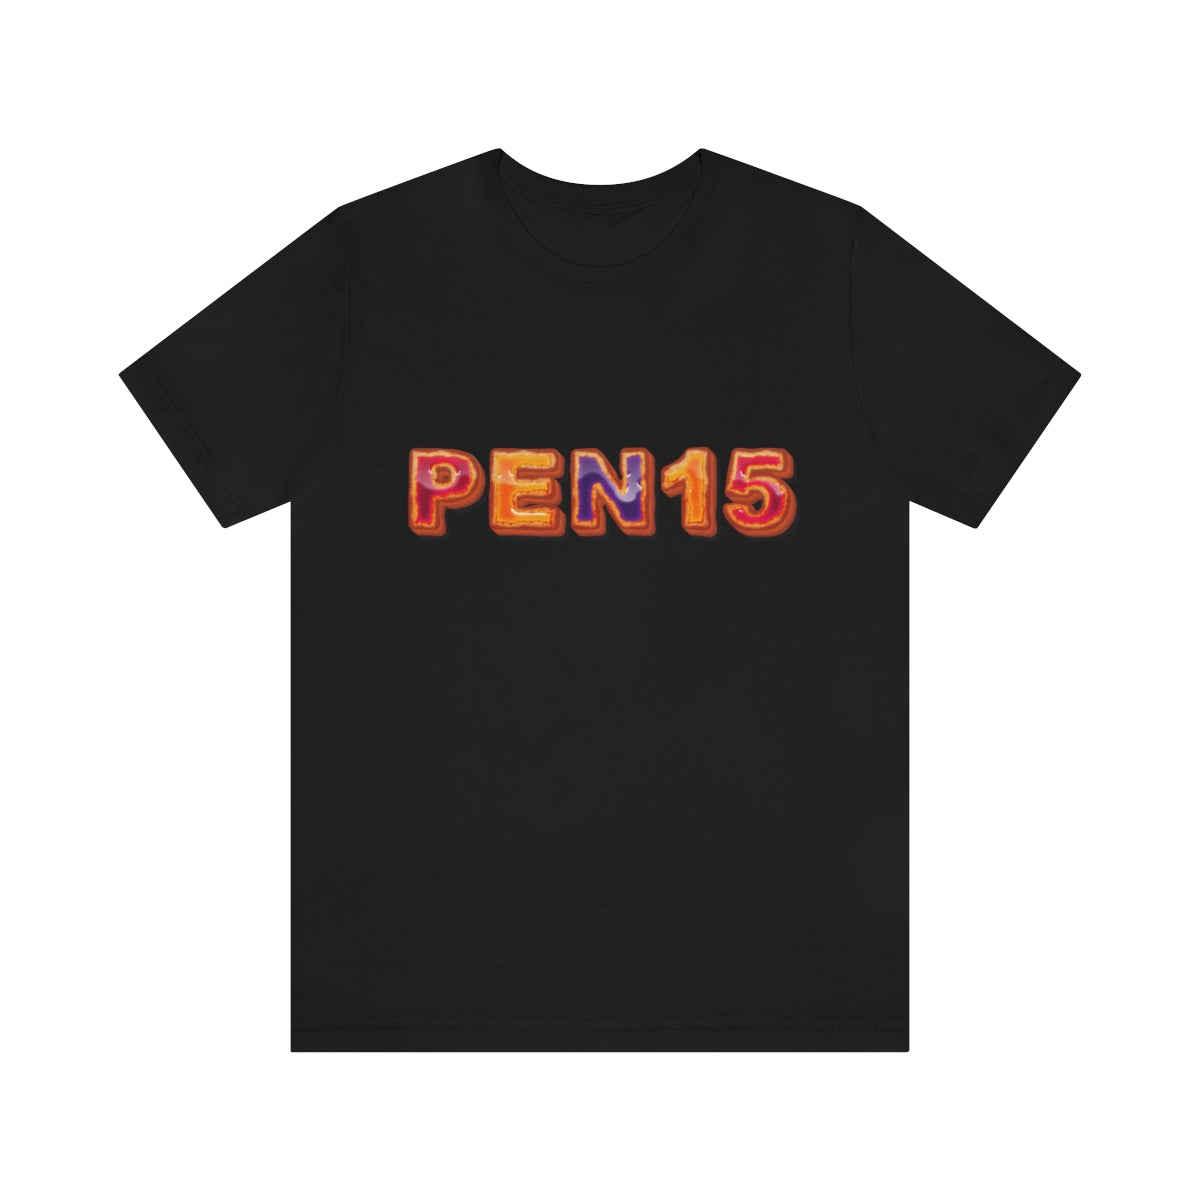 Peanut Butter & Jam PEN15 T-Shirt